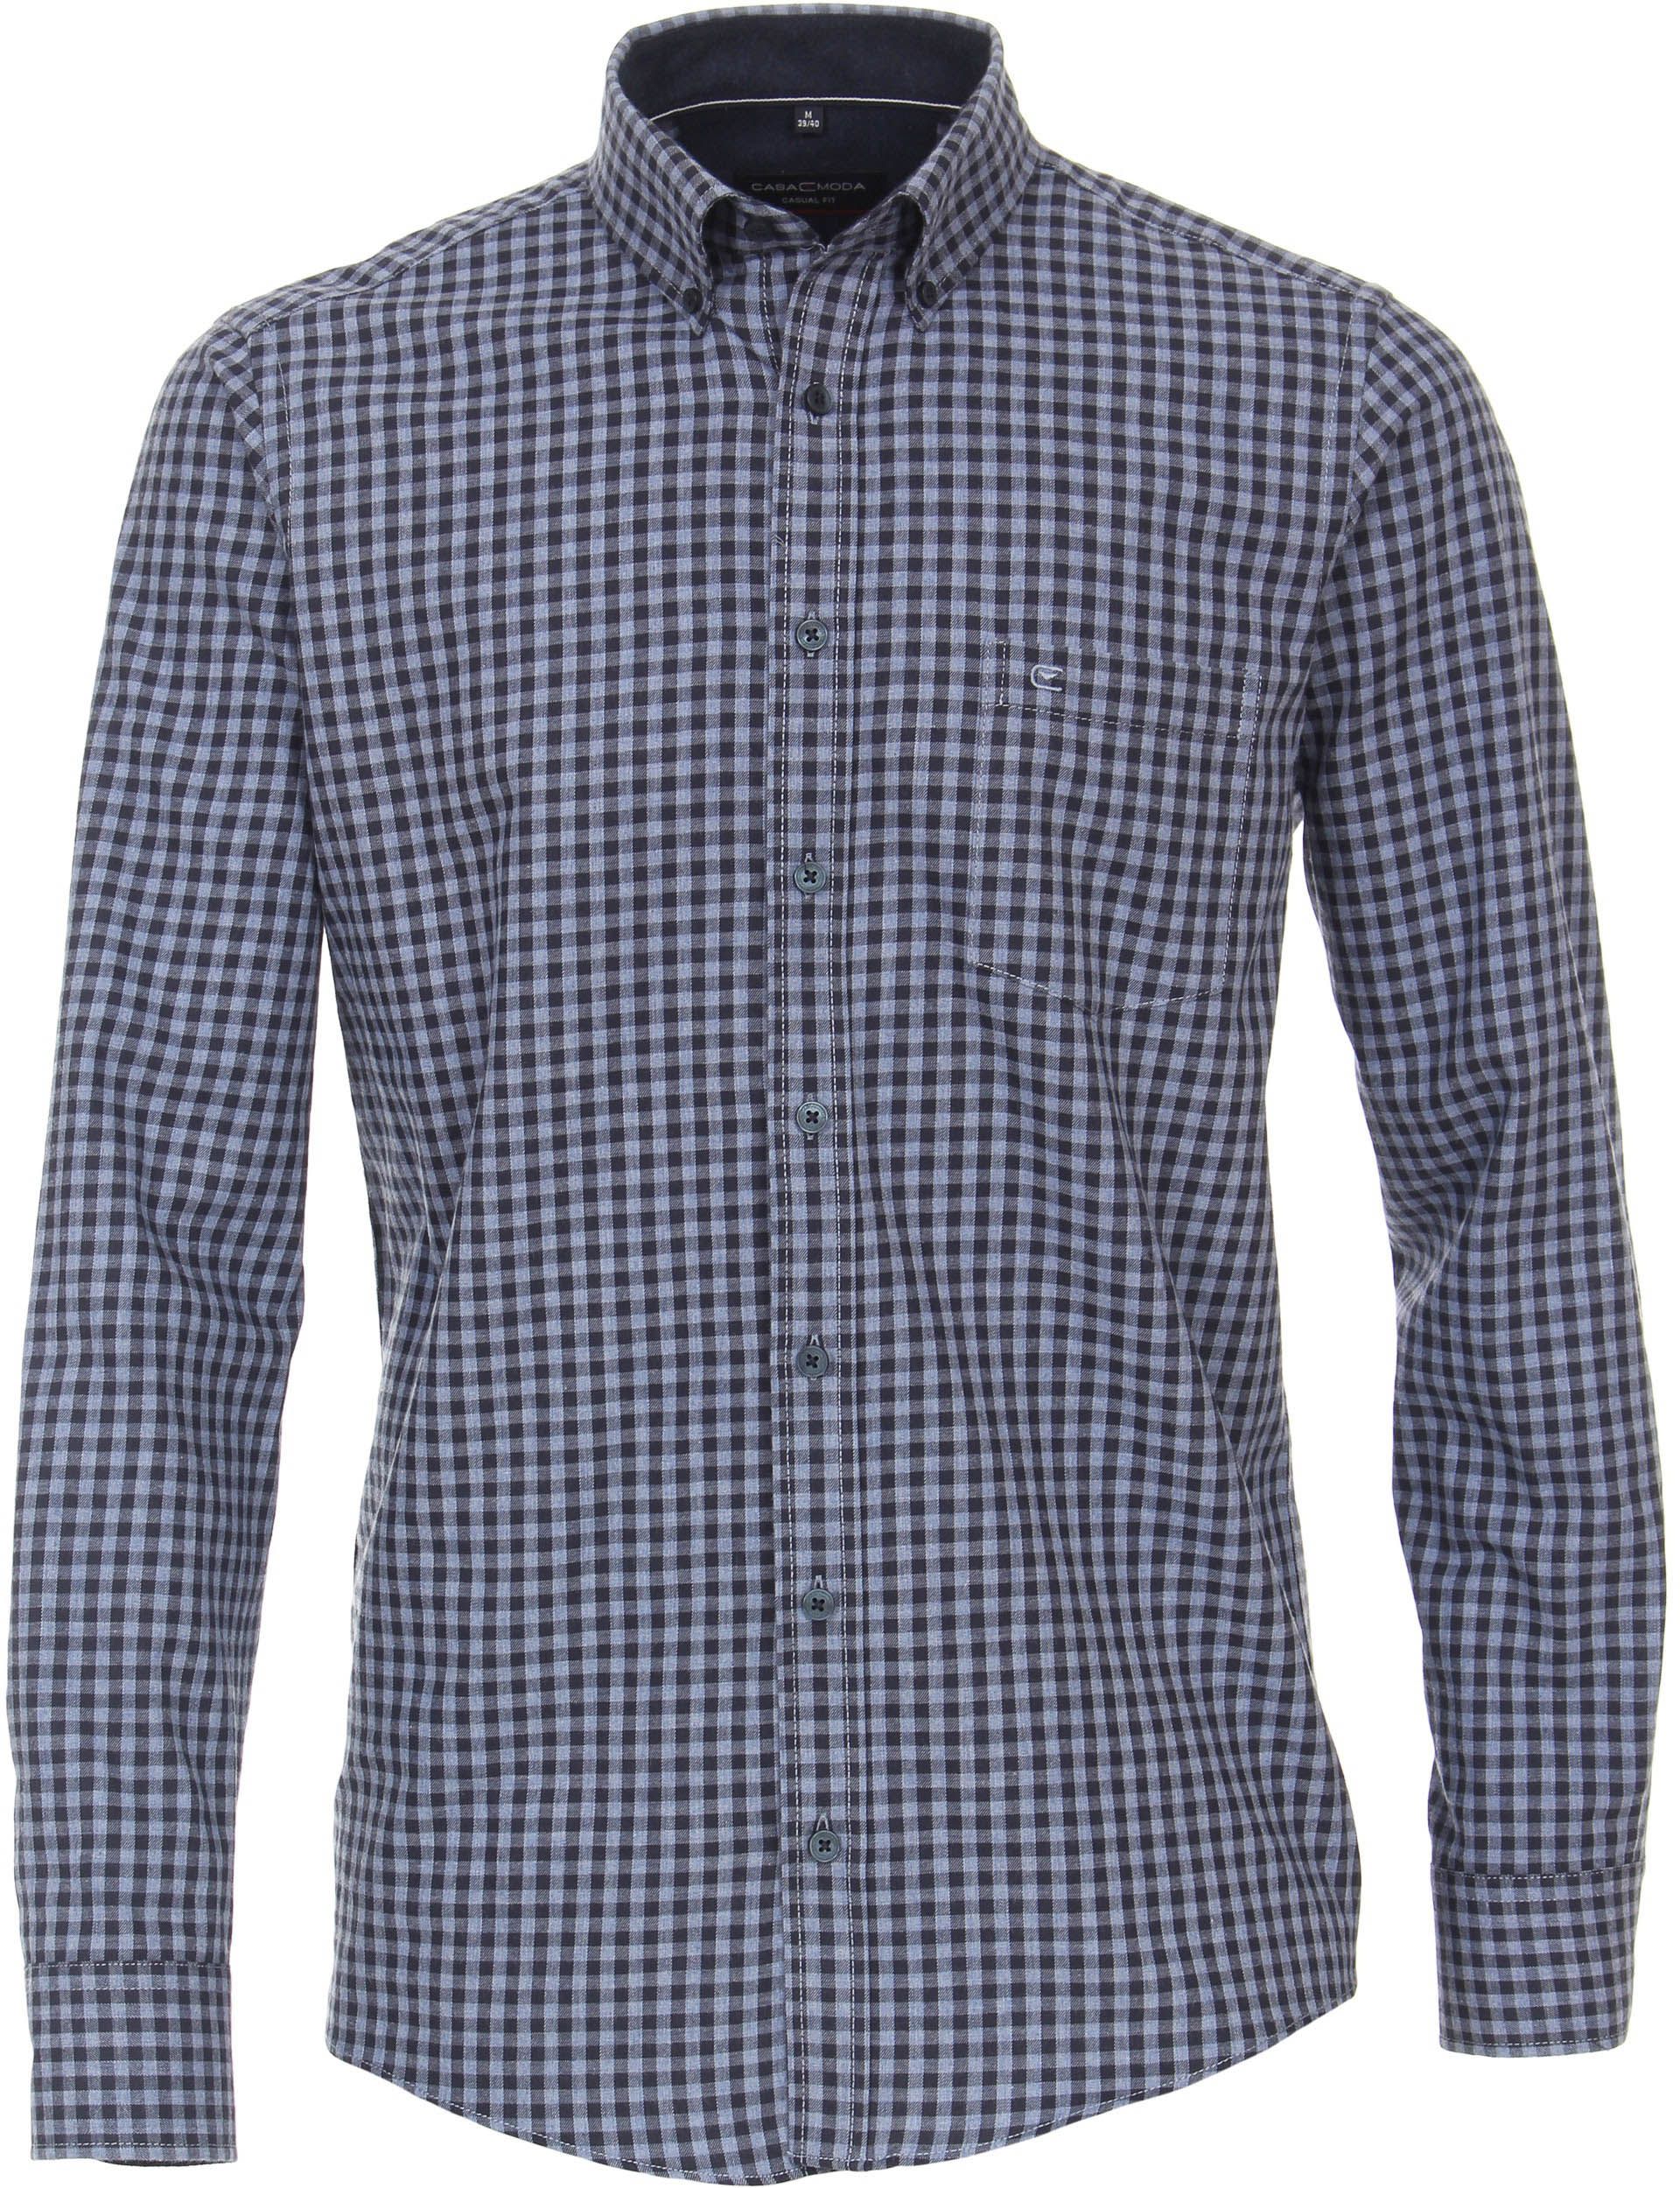 Casa Moda Casual Shirt Checkered Multicolour Blue size M